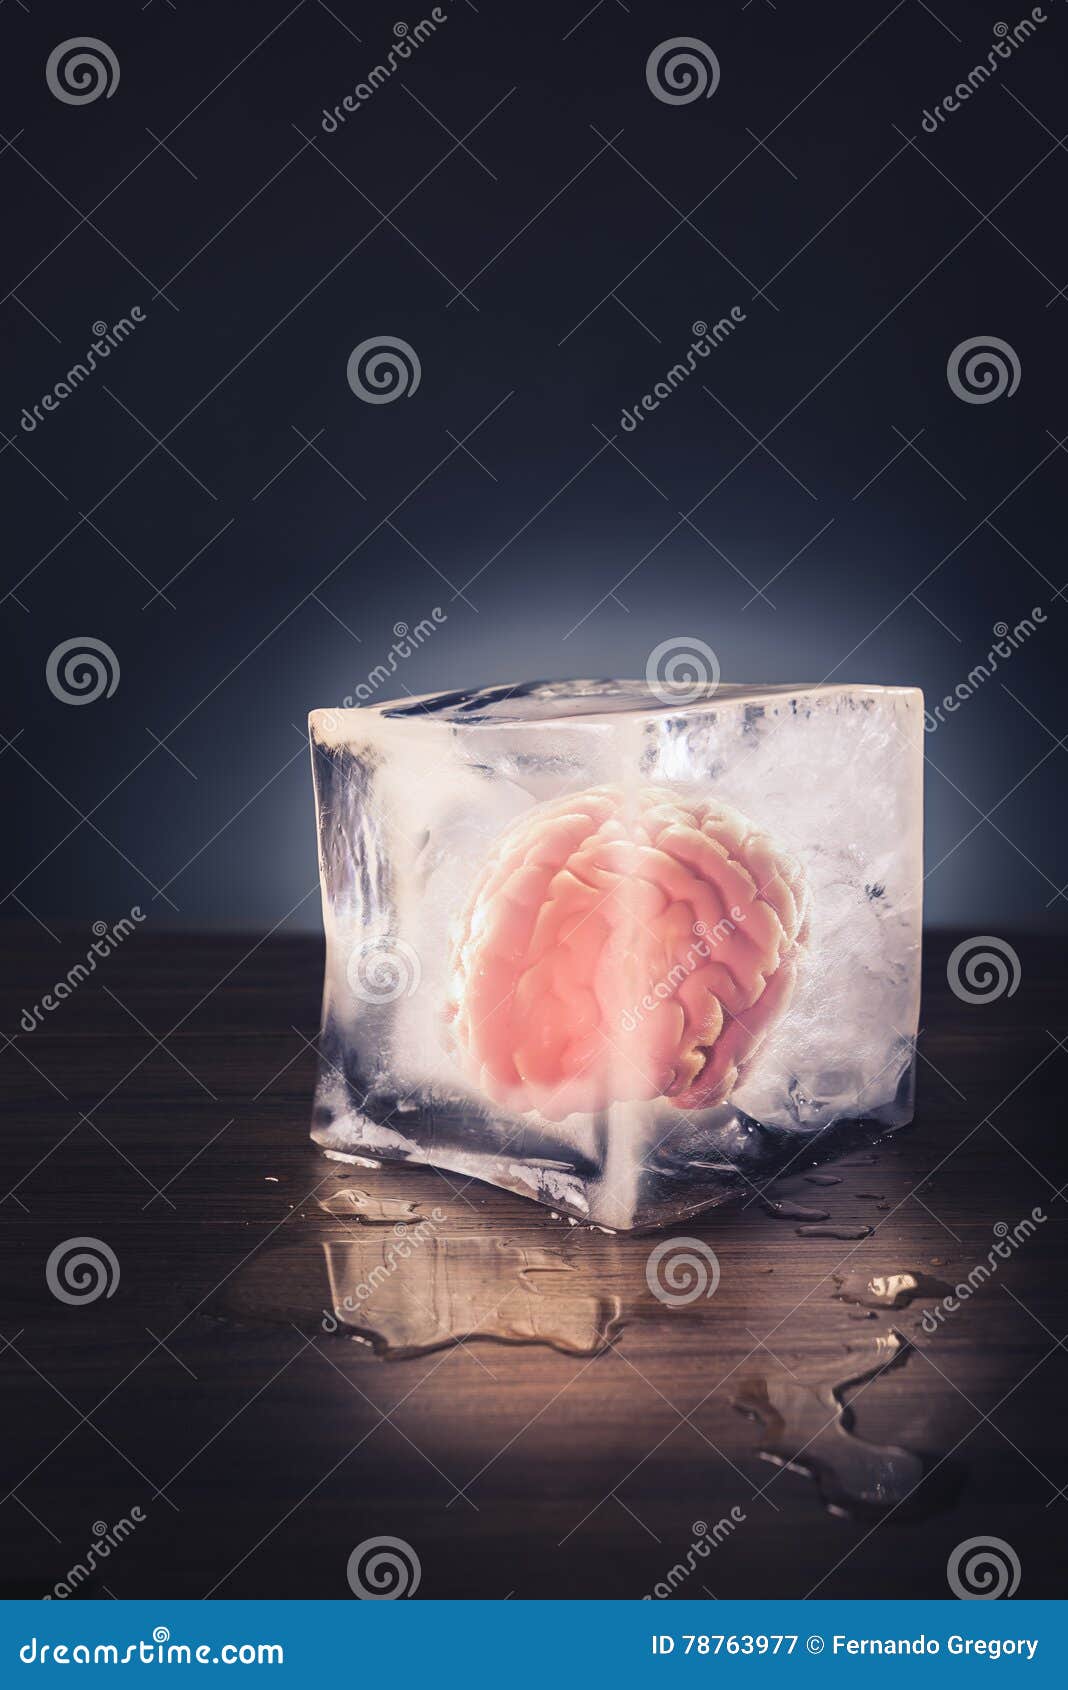 Заморозка мозгов. Человек внутри льда. Лёд внутри он жидкий. Негр кубик льда актёр.